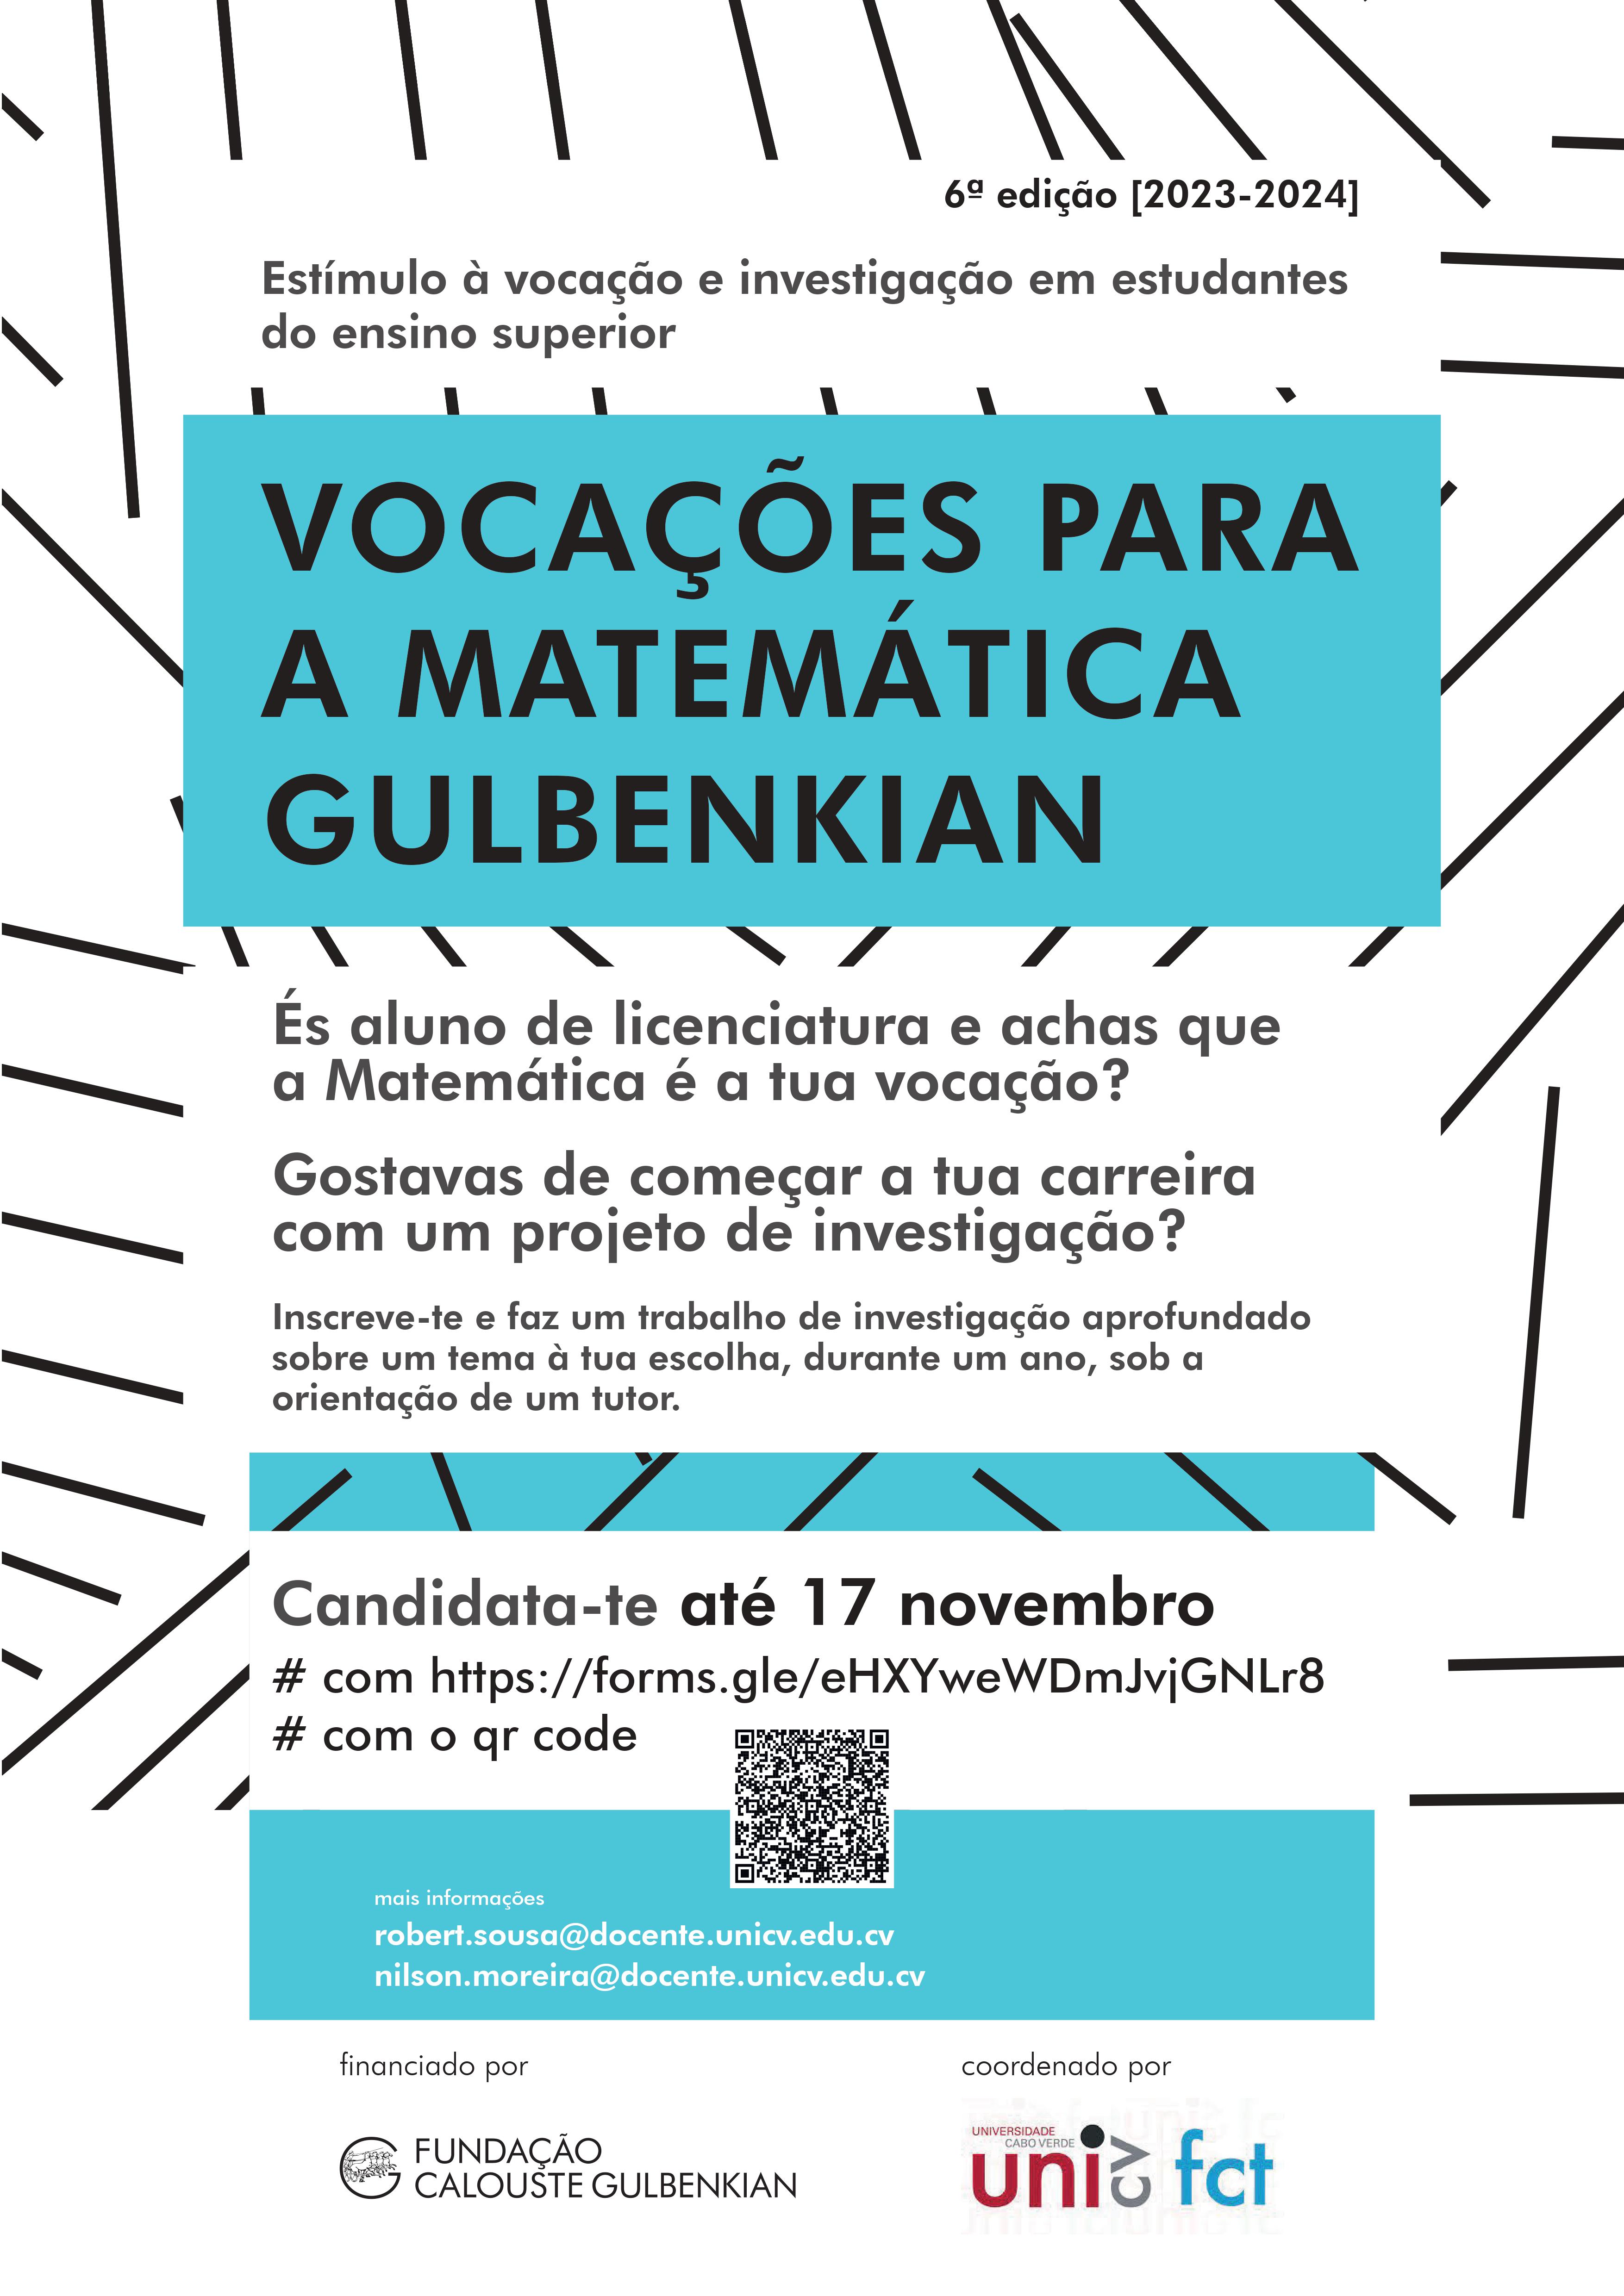 gulbenkian matemática vocações 6ed cartaz